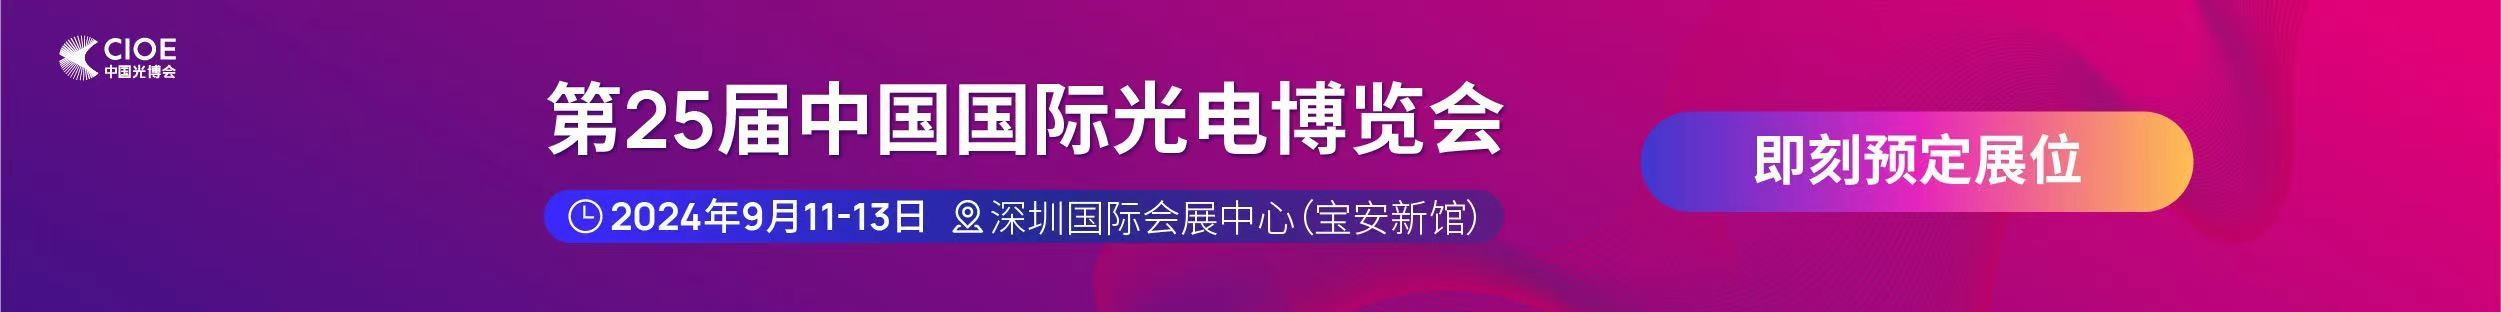 亚美am8ag公司受邀参展第25届中国国际光电博览会